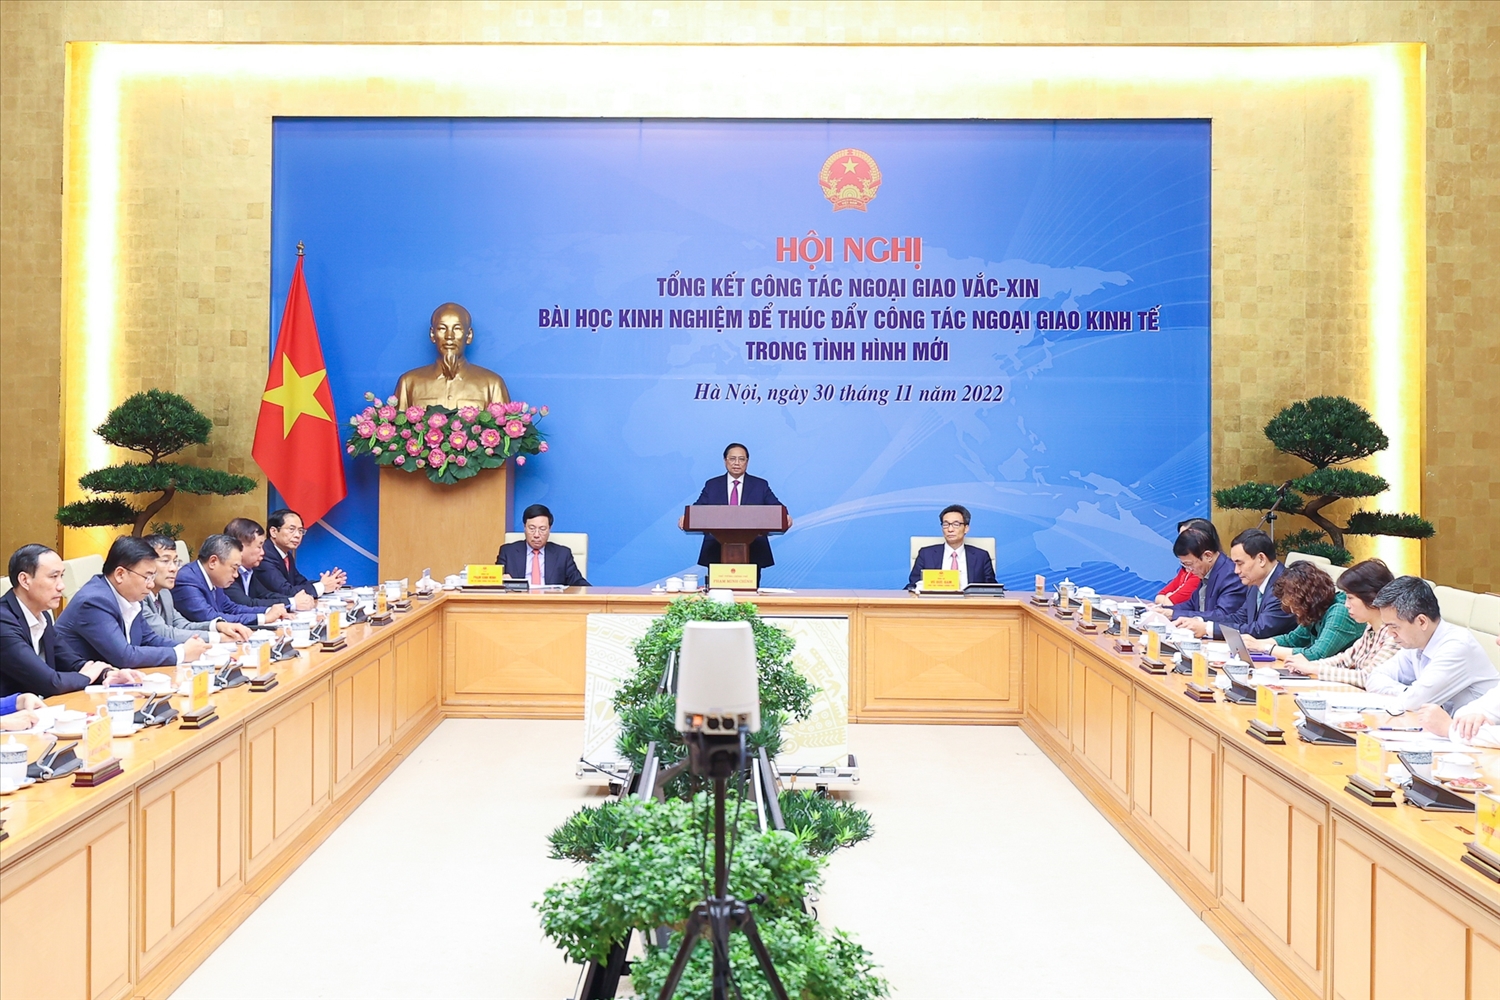 Thủ tướng Phạm Minh Chính chủ trì Hội nghị tổng kết công tác ngoại giao vaccine - Ảnh: VGP/Nhật Bắc